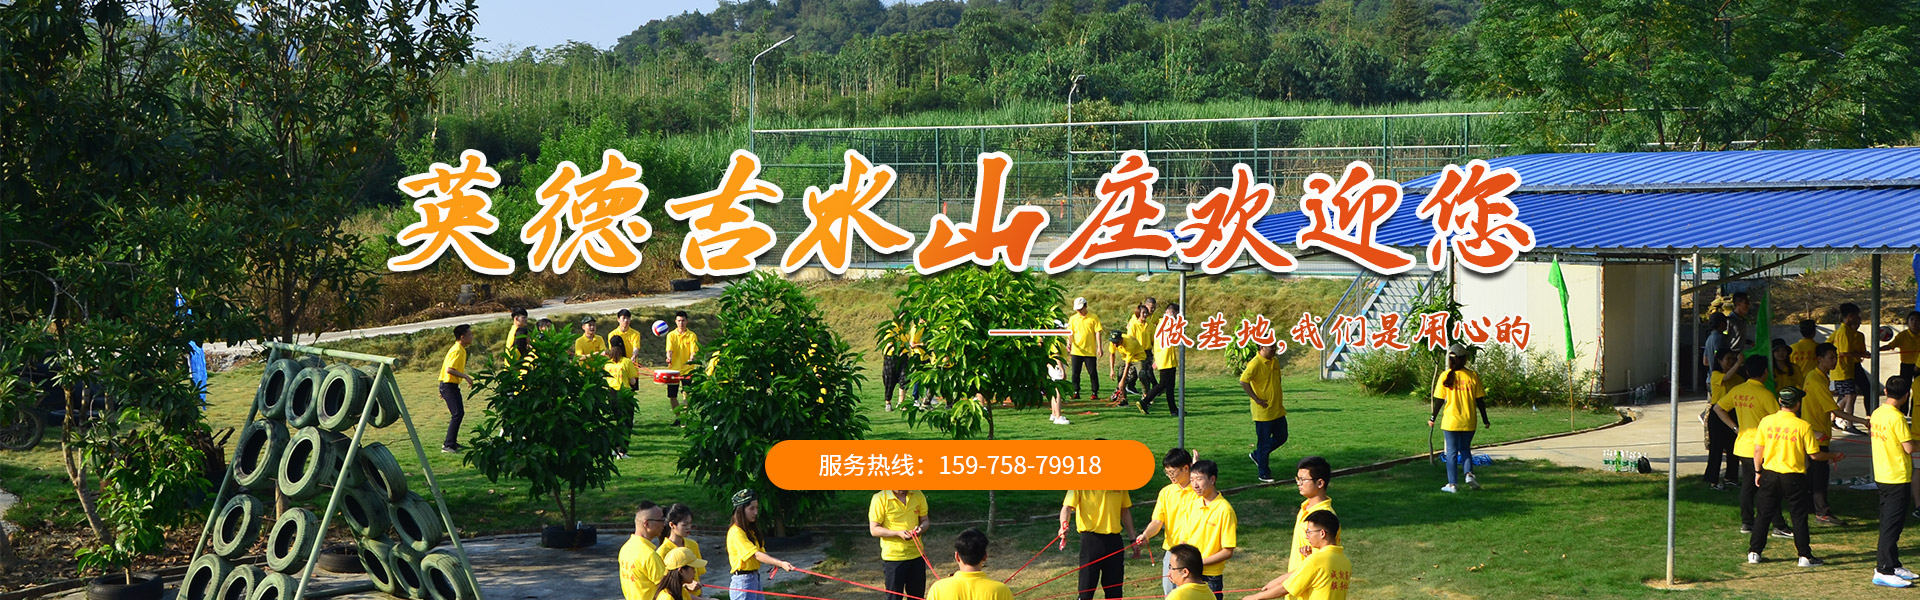 广州吉水山庄拥有专业的户外拓展训练基地!